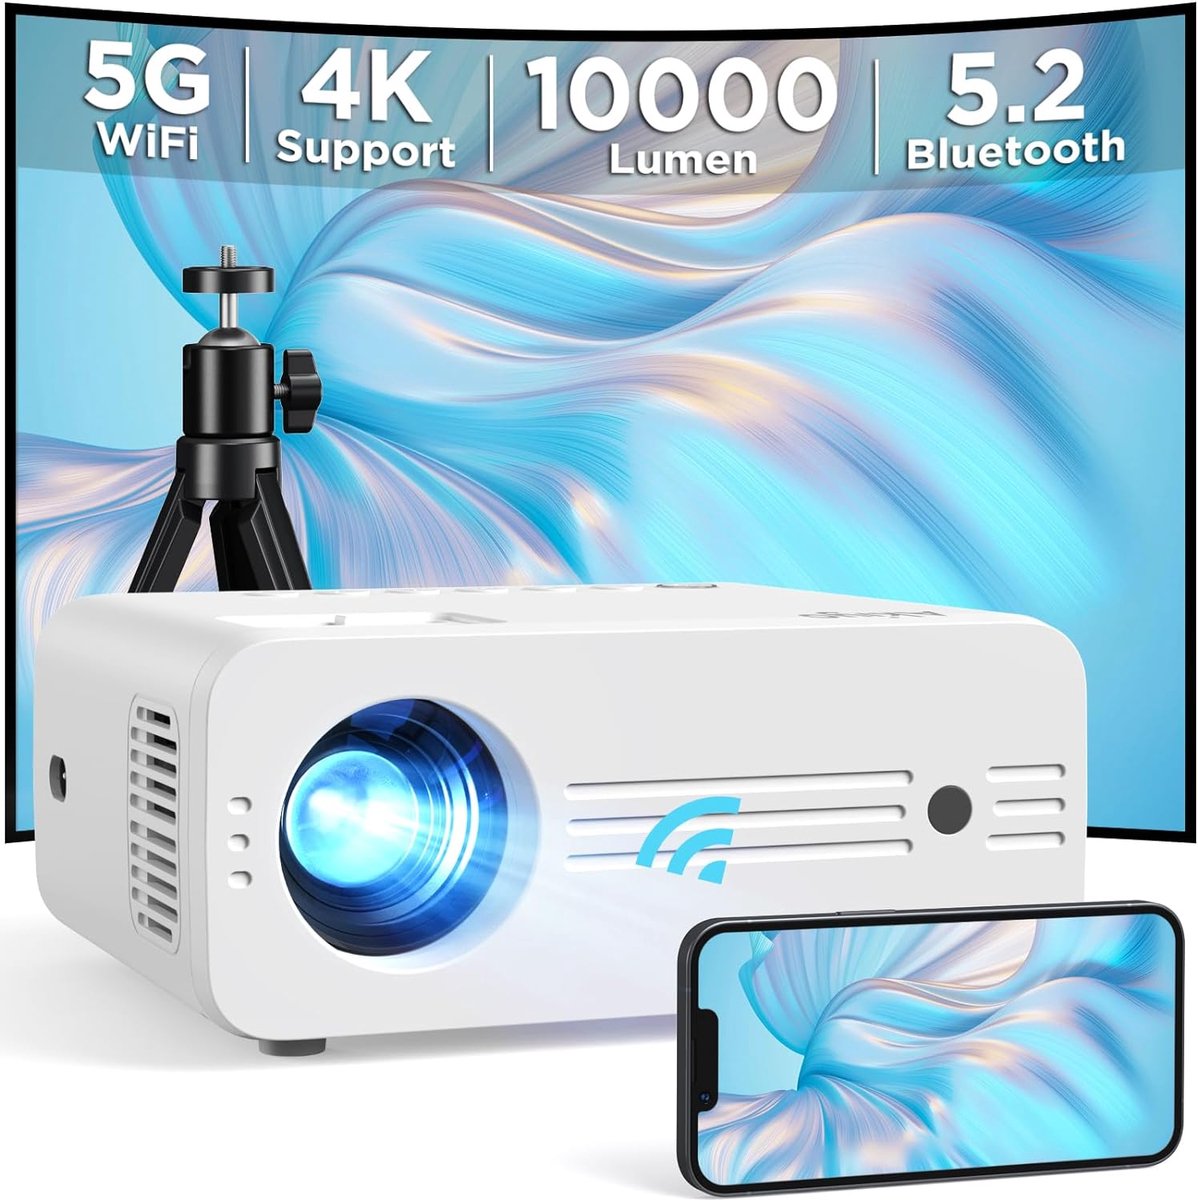 AKIYO Beamer - Full HD 1080p, 10.000 lumen, 5G WiFi en Bluetooth met Statief